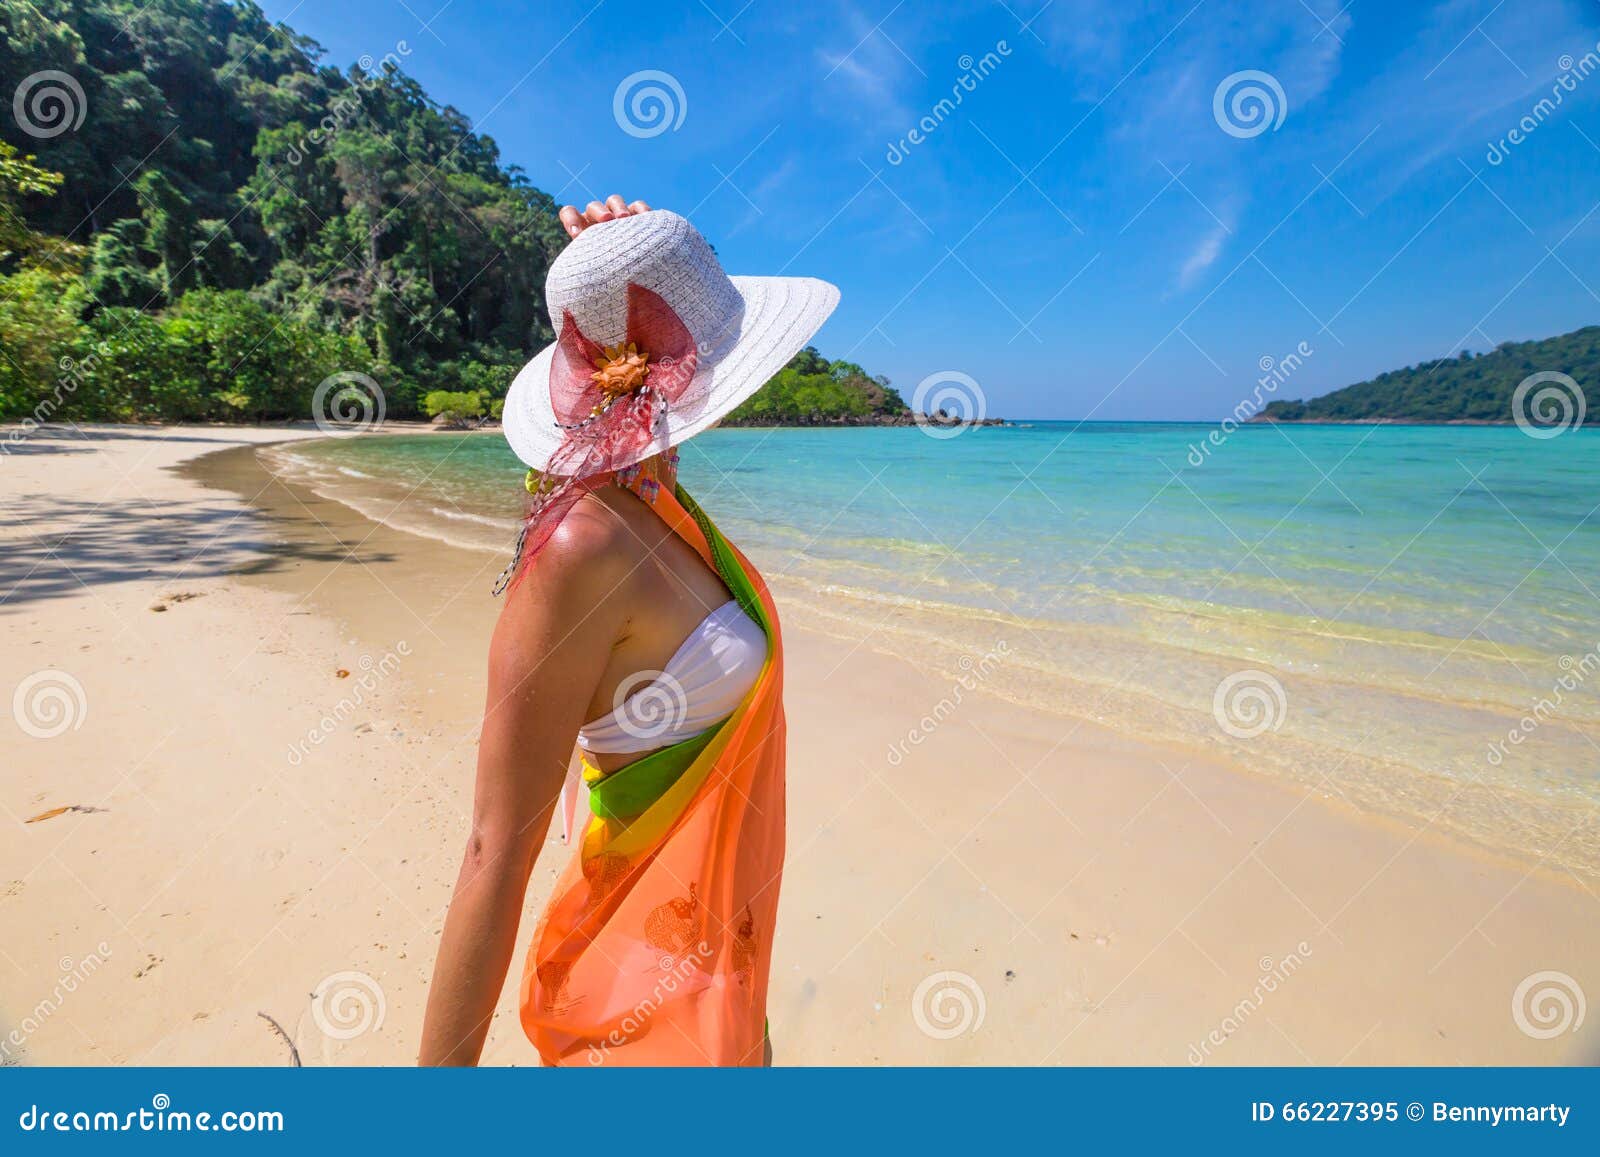 woman on tropical beach